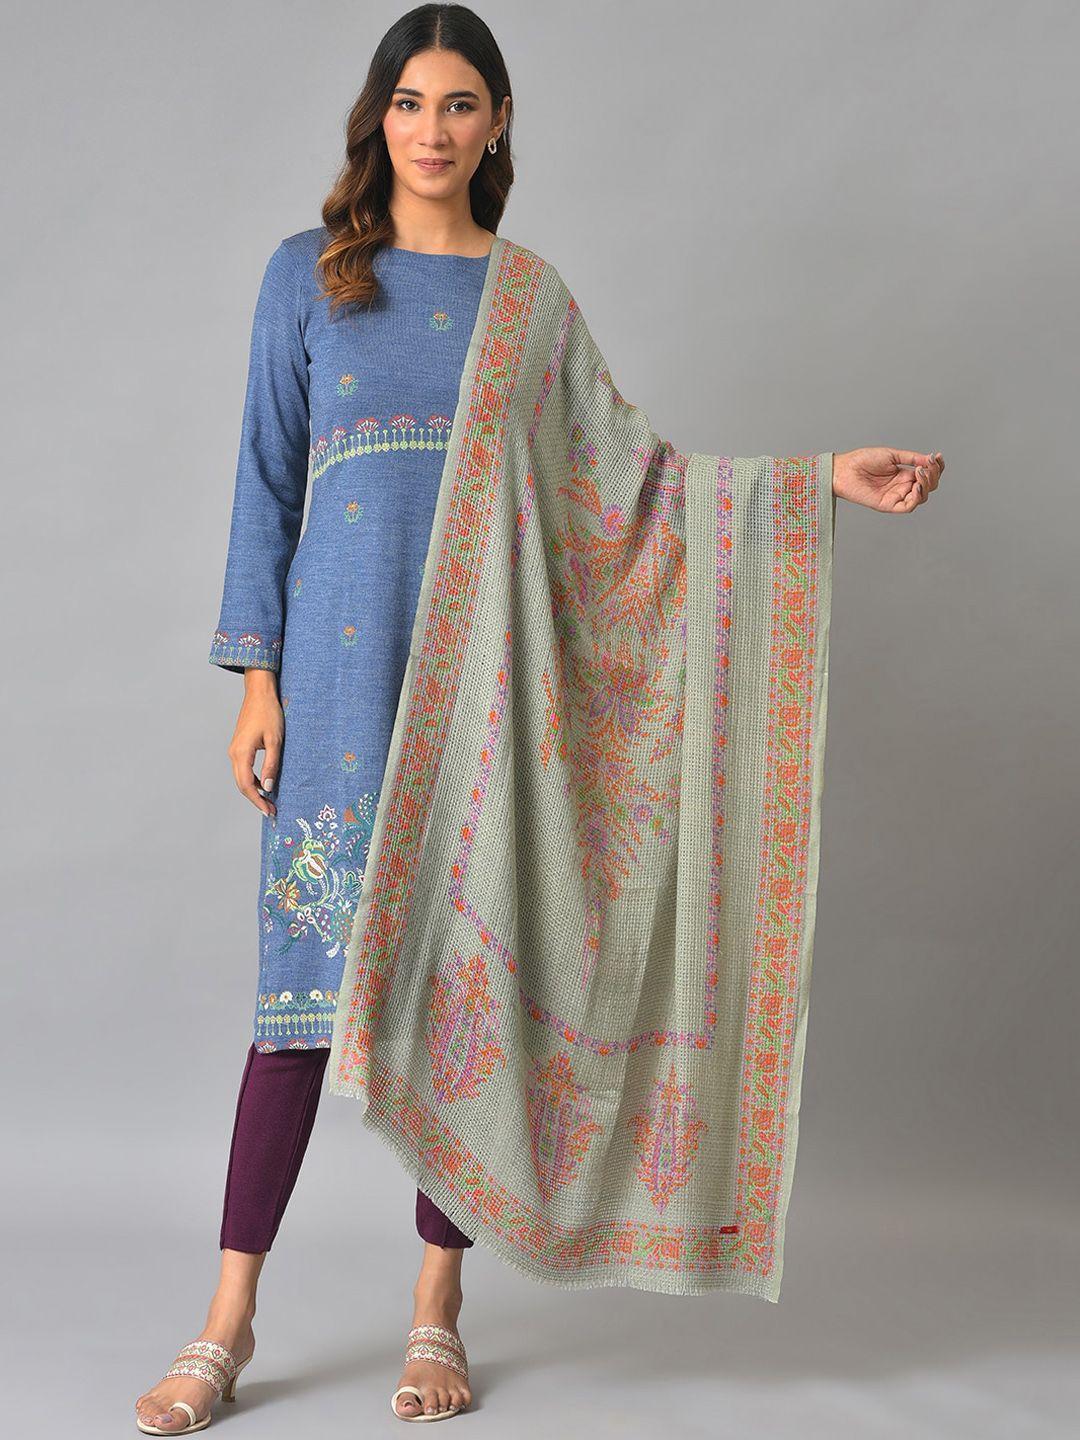 w women printed design shawl